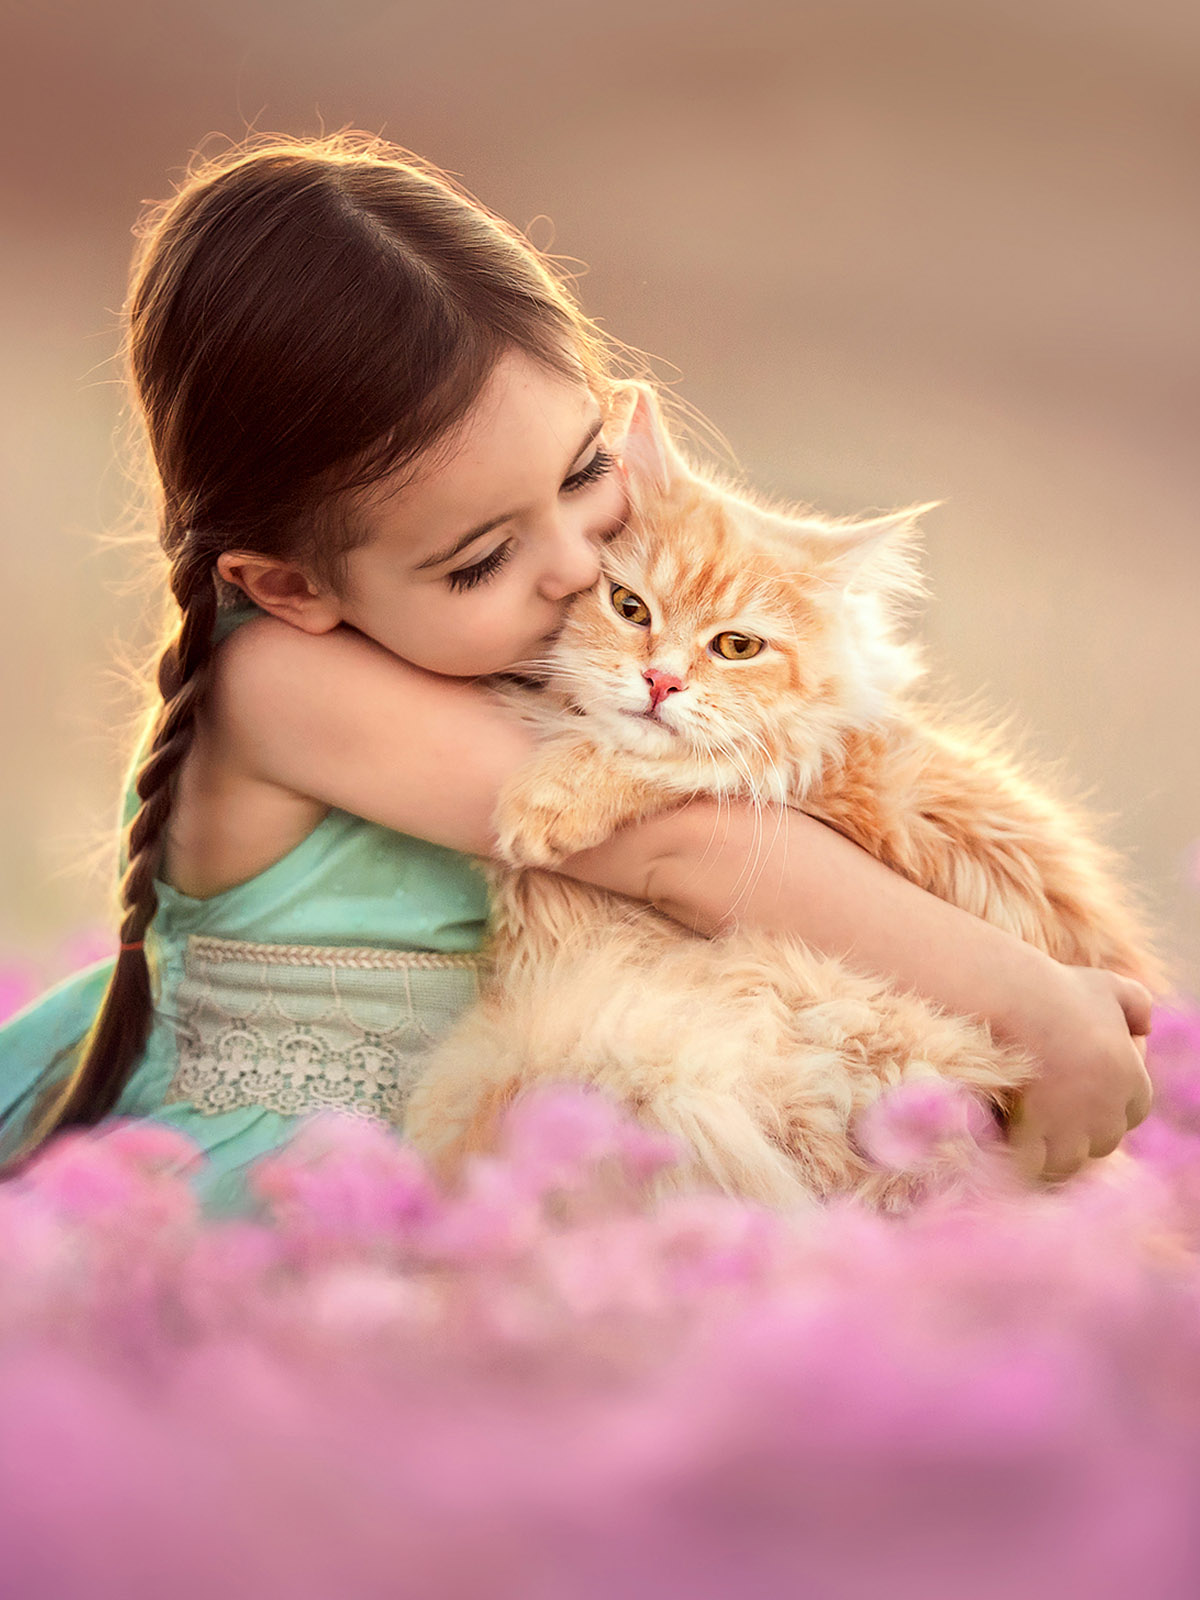 Самая добра картинка. Девочка с котятами. Кошка девочка. Котёнок-ребёнок. Дети с животными.